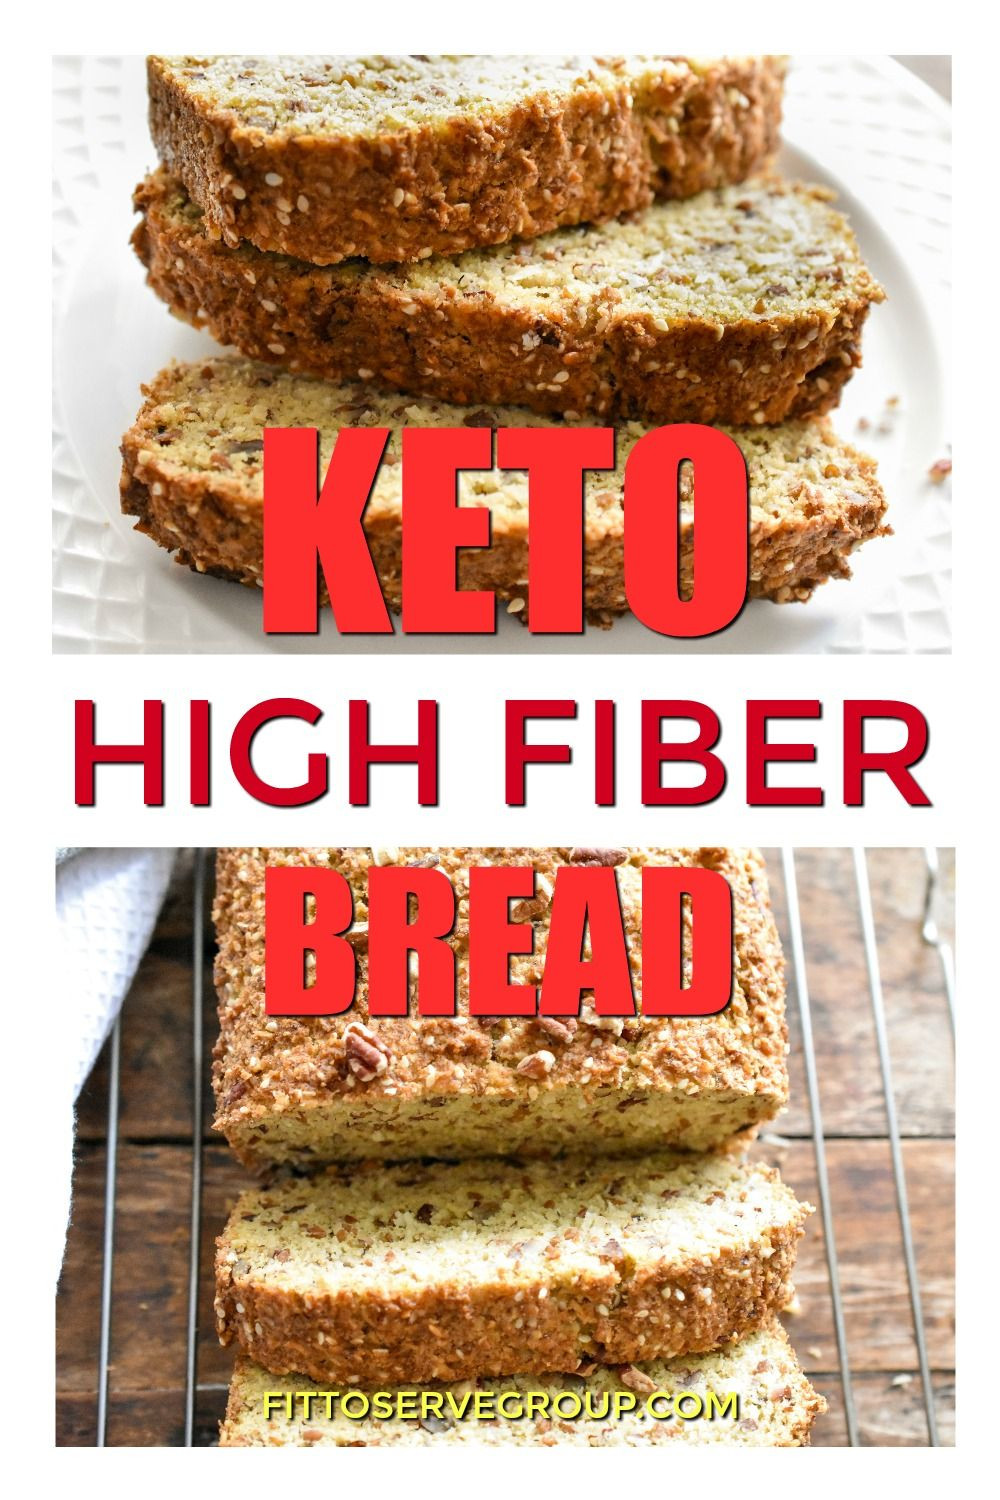 Low Carb High Fiber Recipes
 Keto High Fiber Bread in 2020